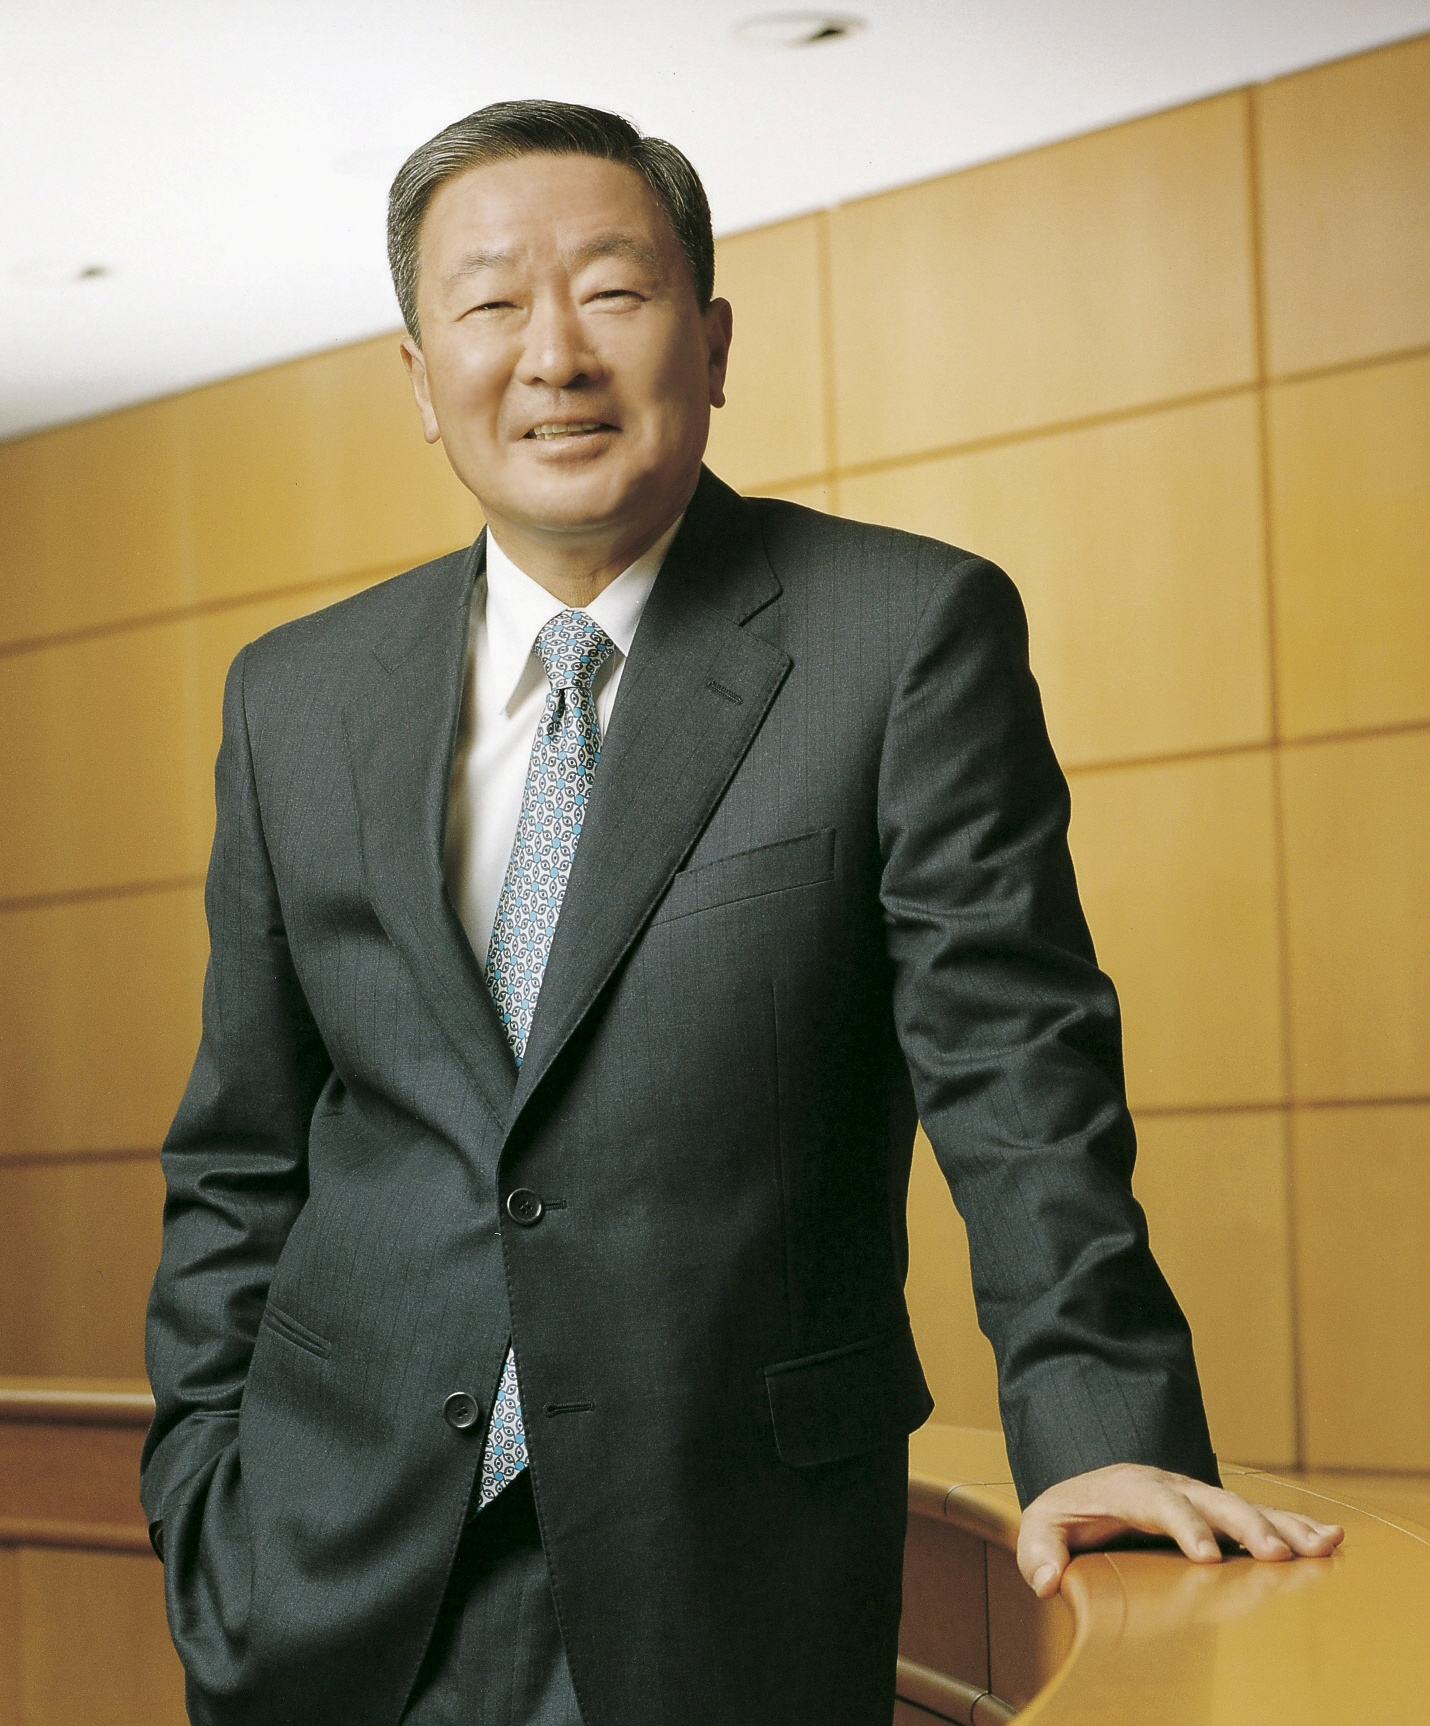 كو بون-مو رئيس مجموعة ال جى الكورية الجنوبية